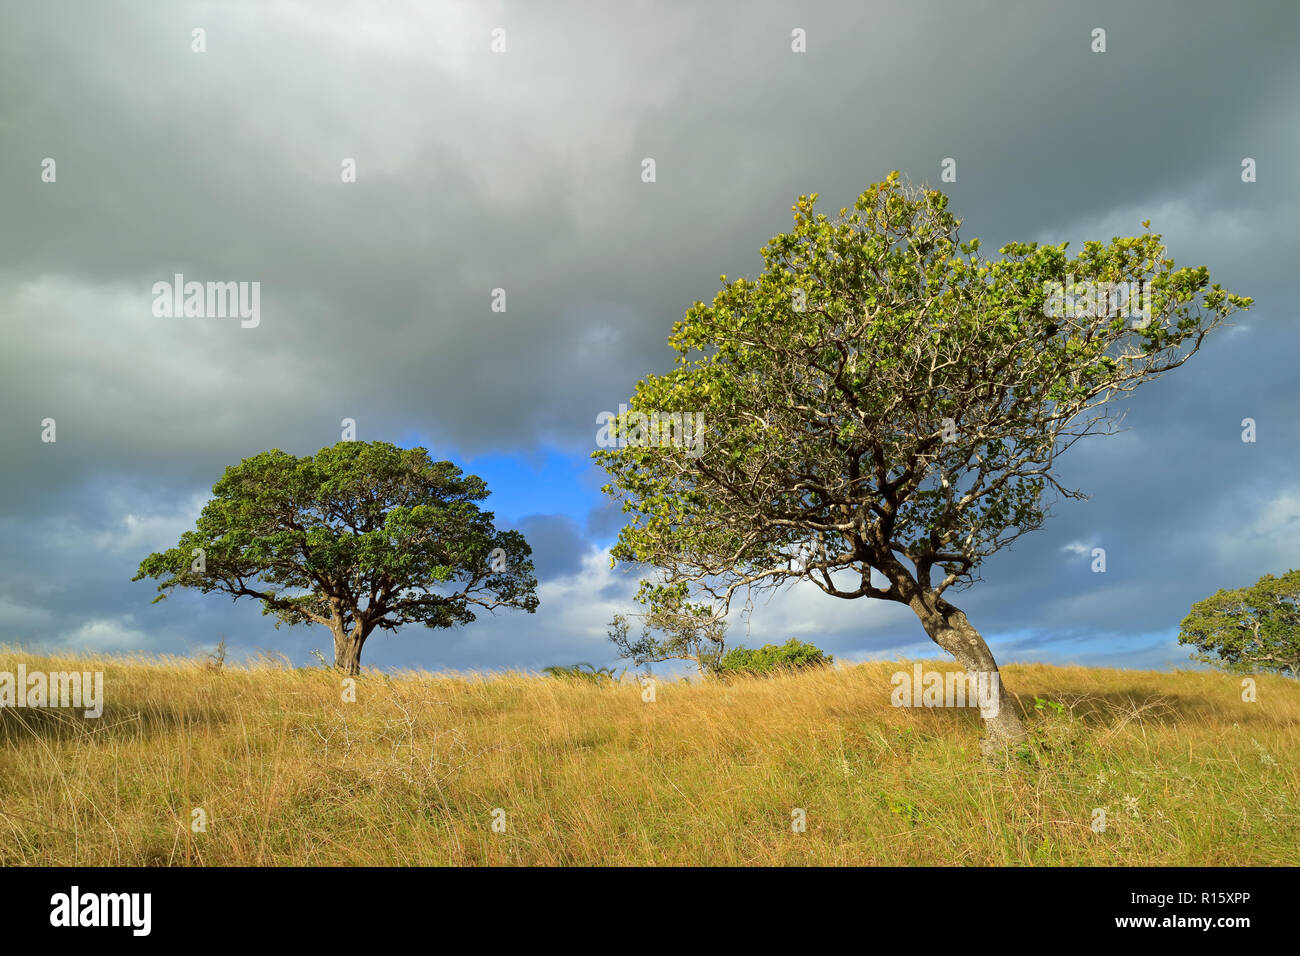 Savane Africaine paysage avec des arbres dans les Prairies avec un ciel nuageux, Afrique du Sud Banque D'Images